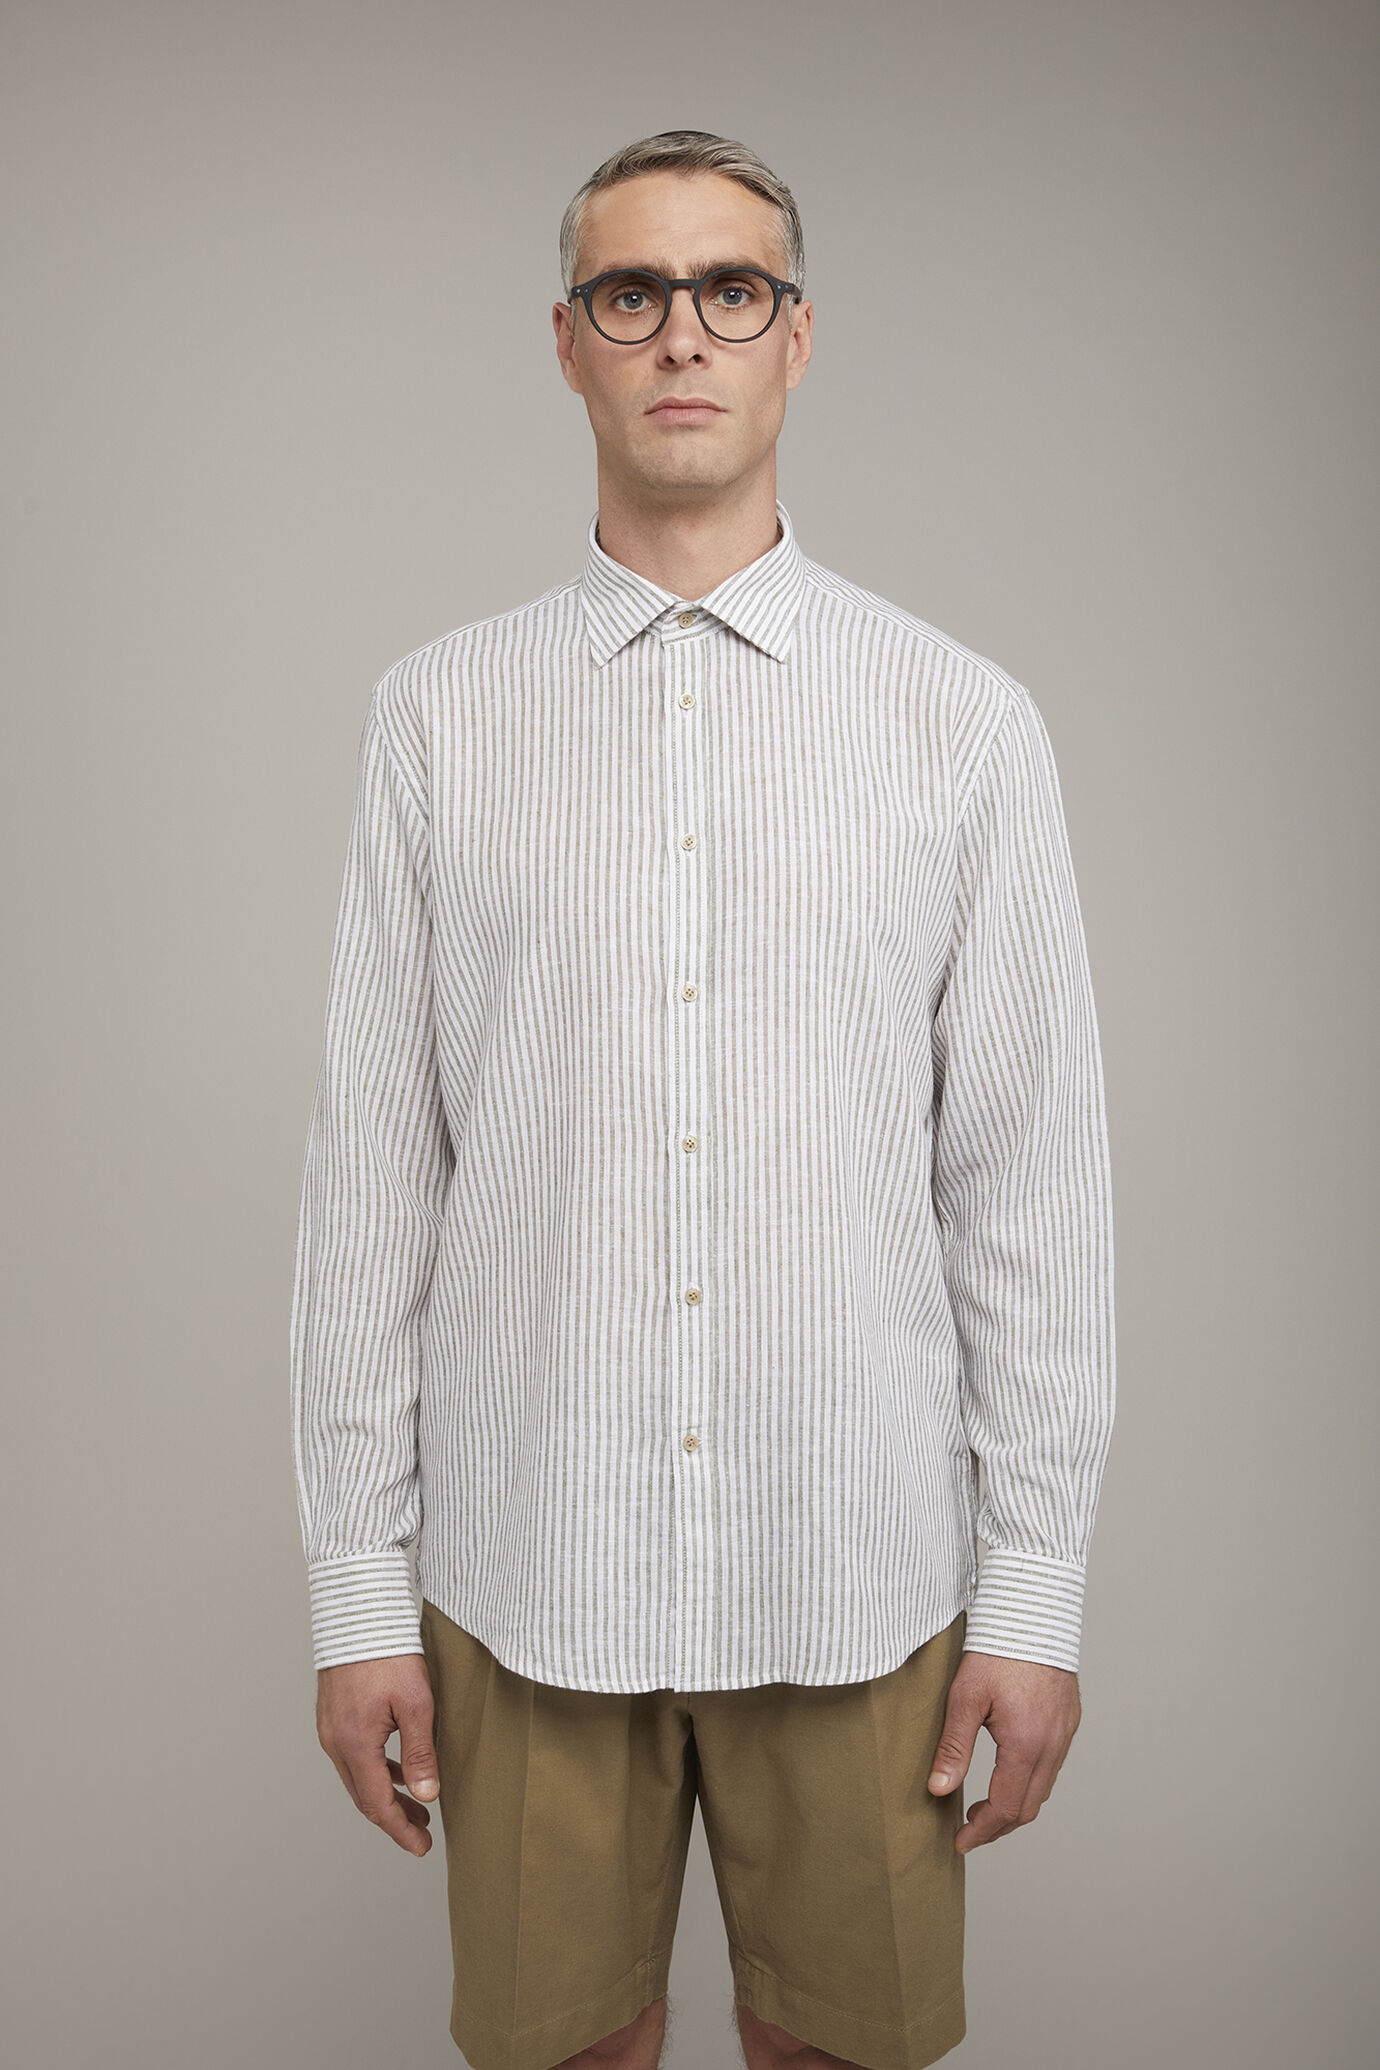 Camicia casual uomo collo classico in lino e cotone rigato comfort fit